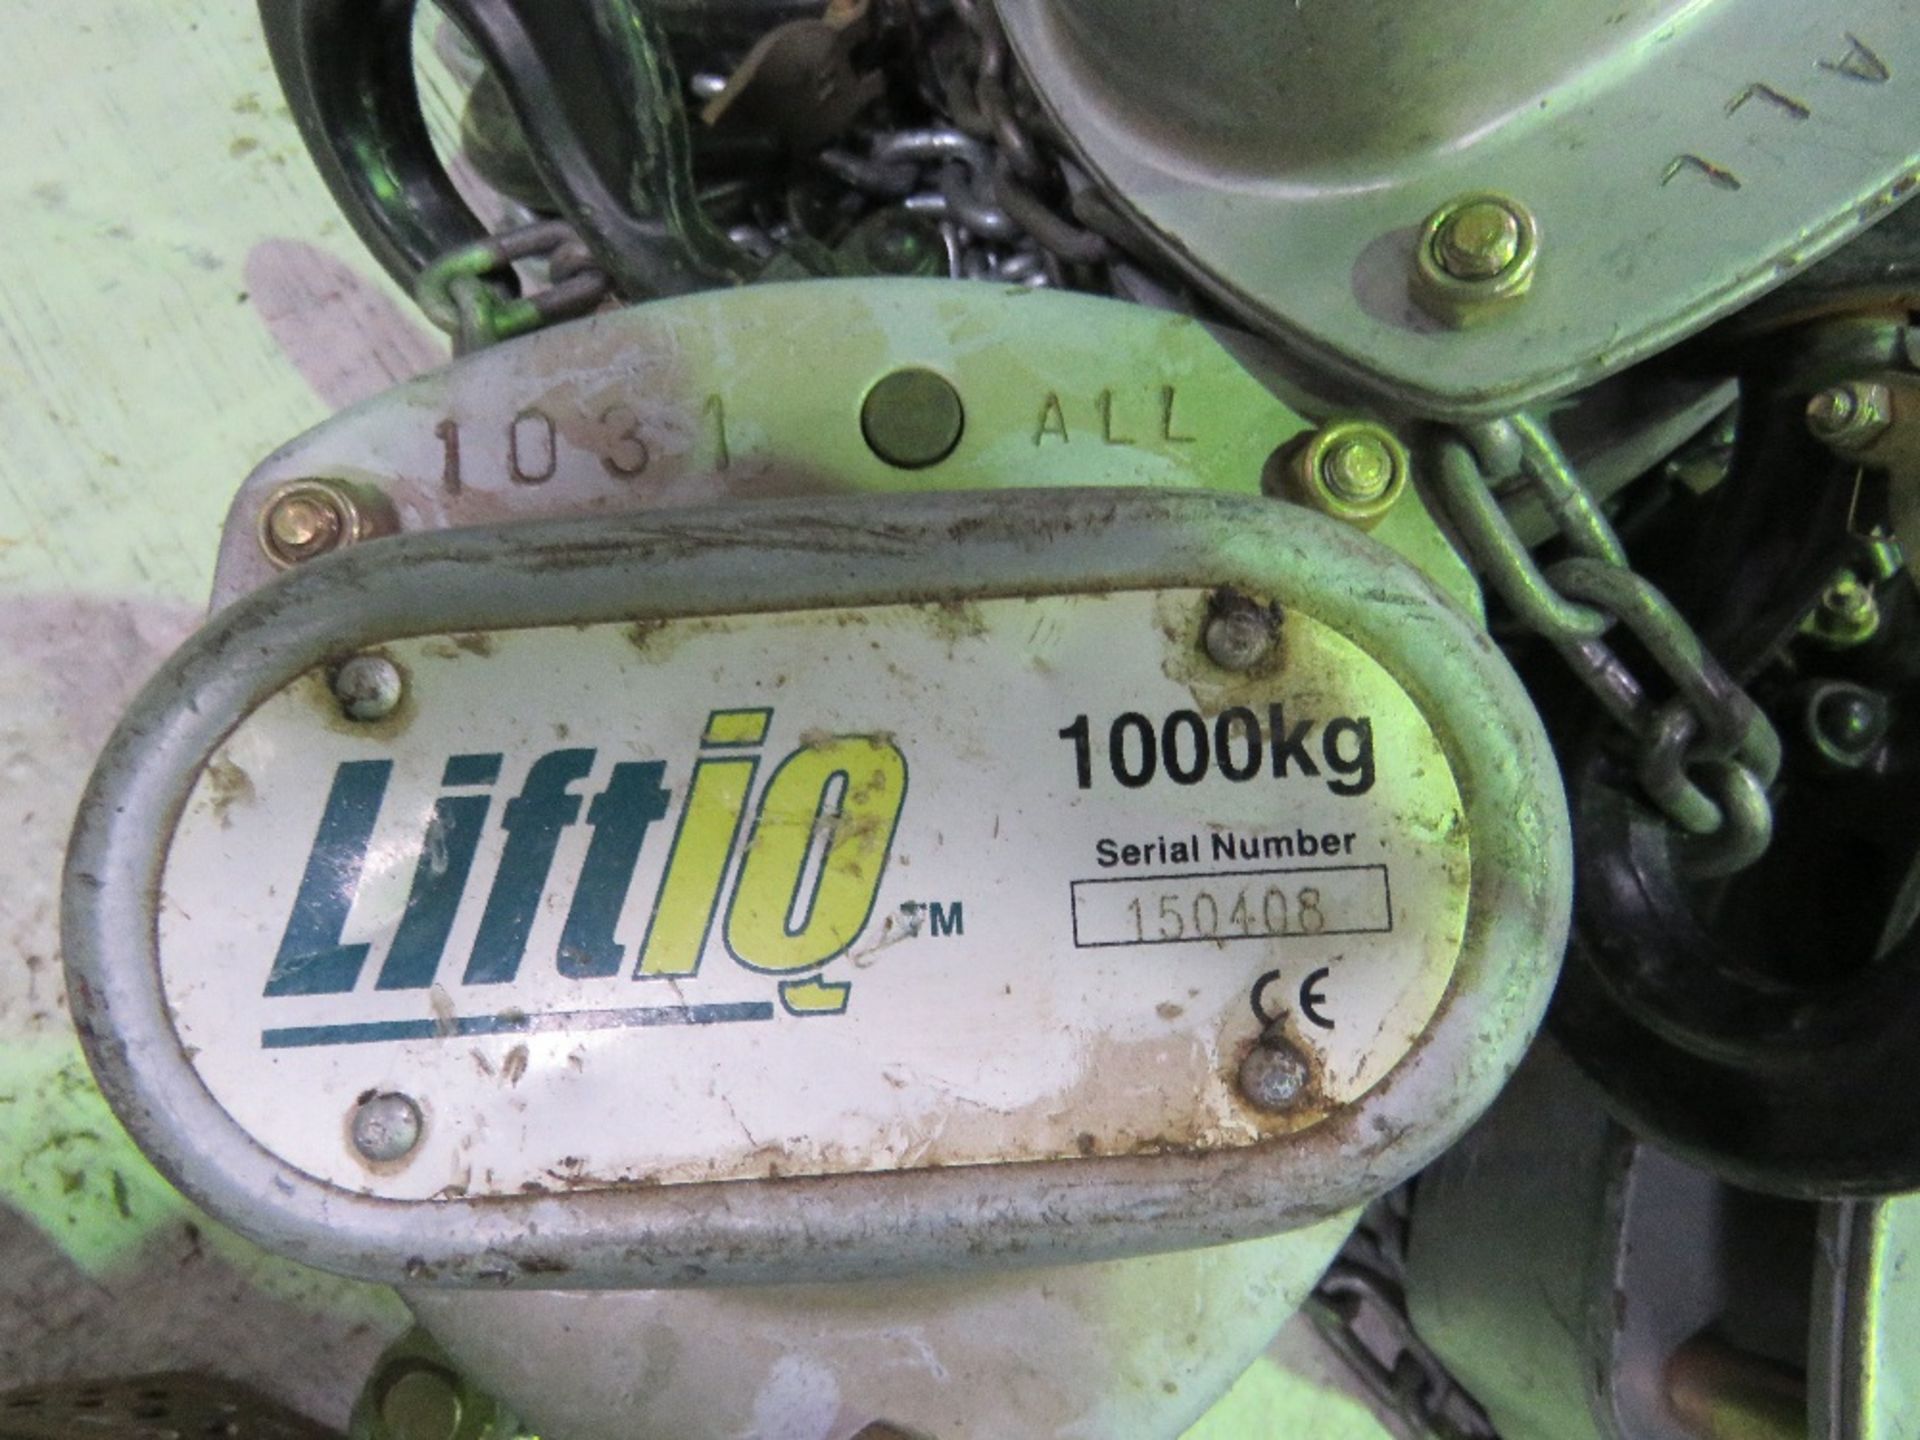 3NO LIFTIQ CHAIN HOISTS, 1000KG RATED. - Image 4 of 4